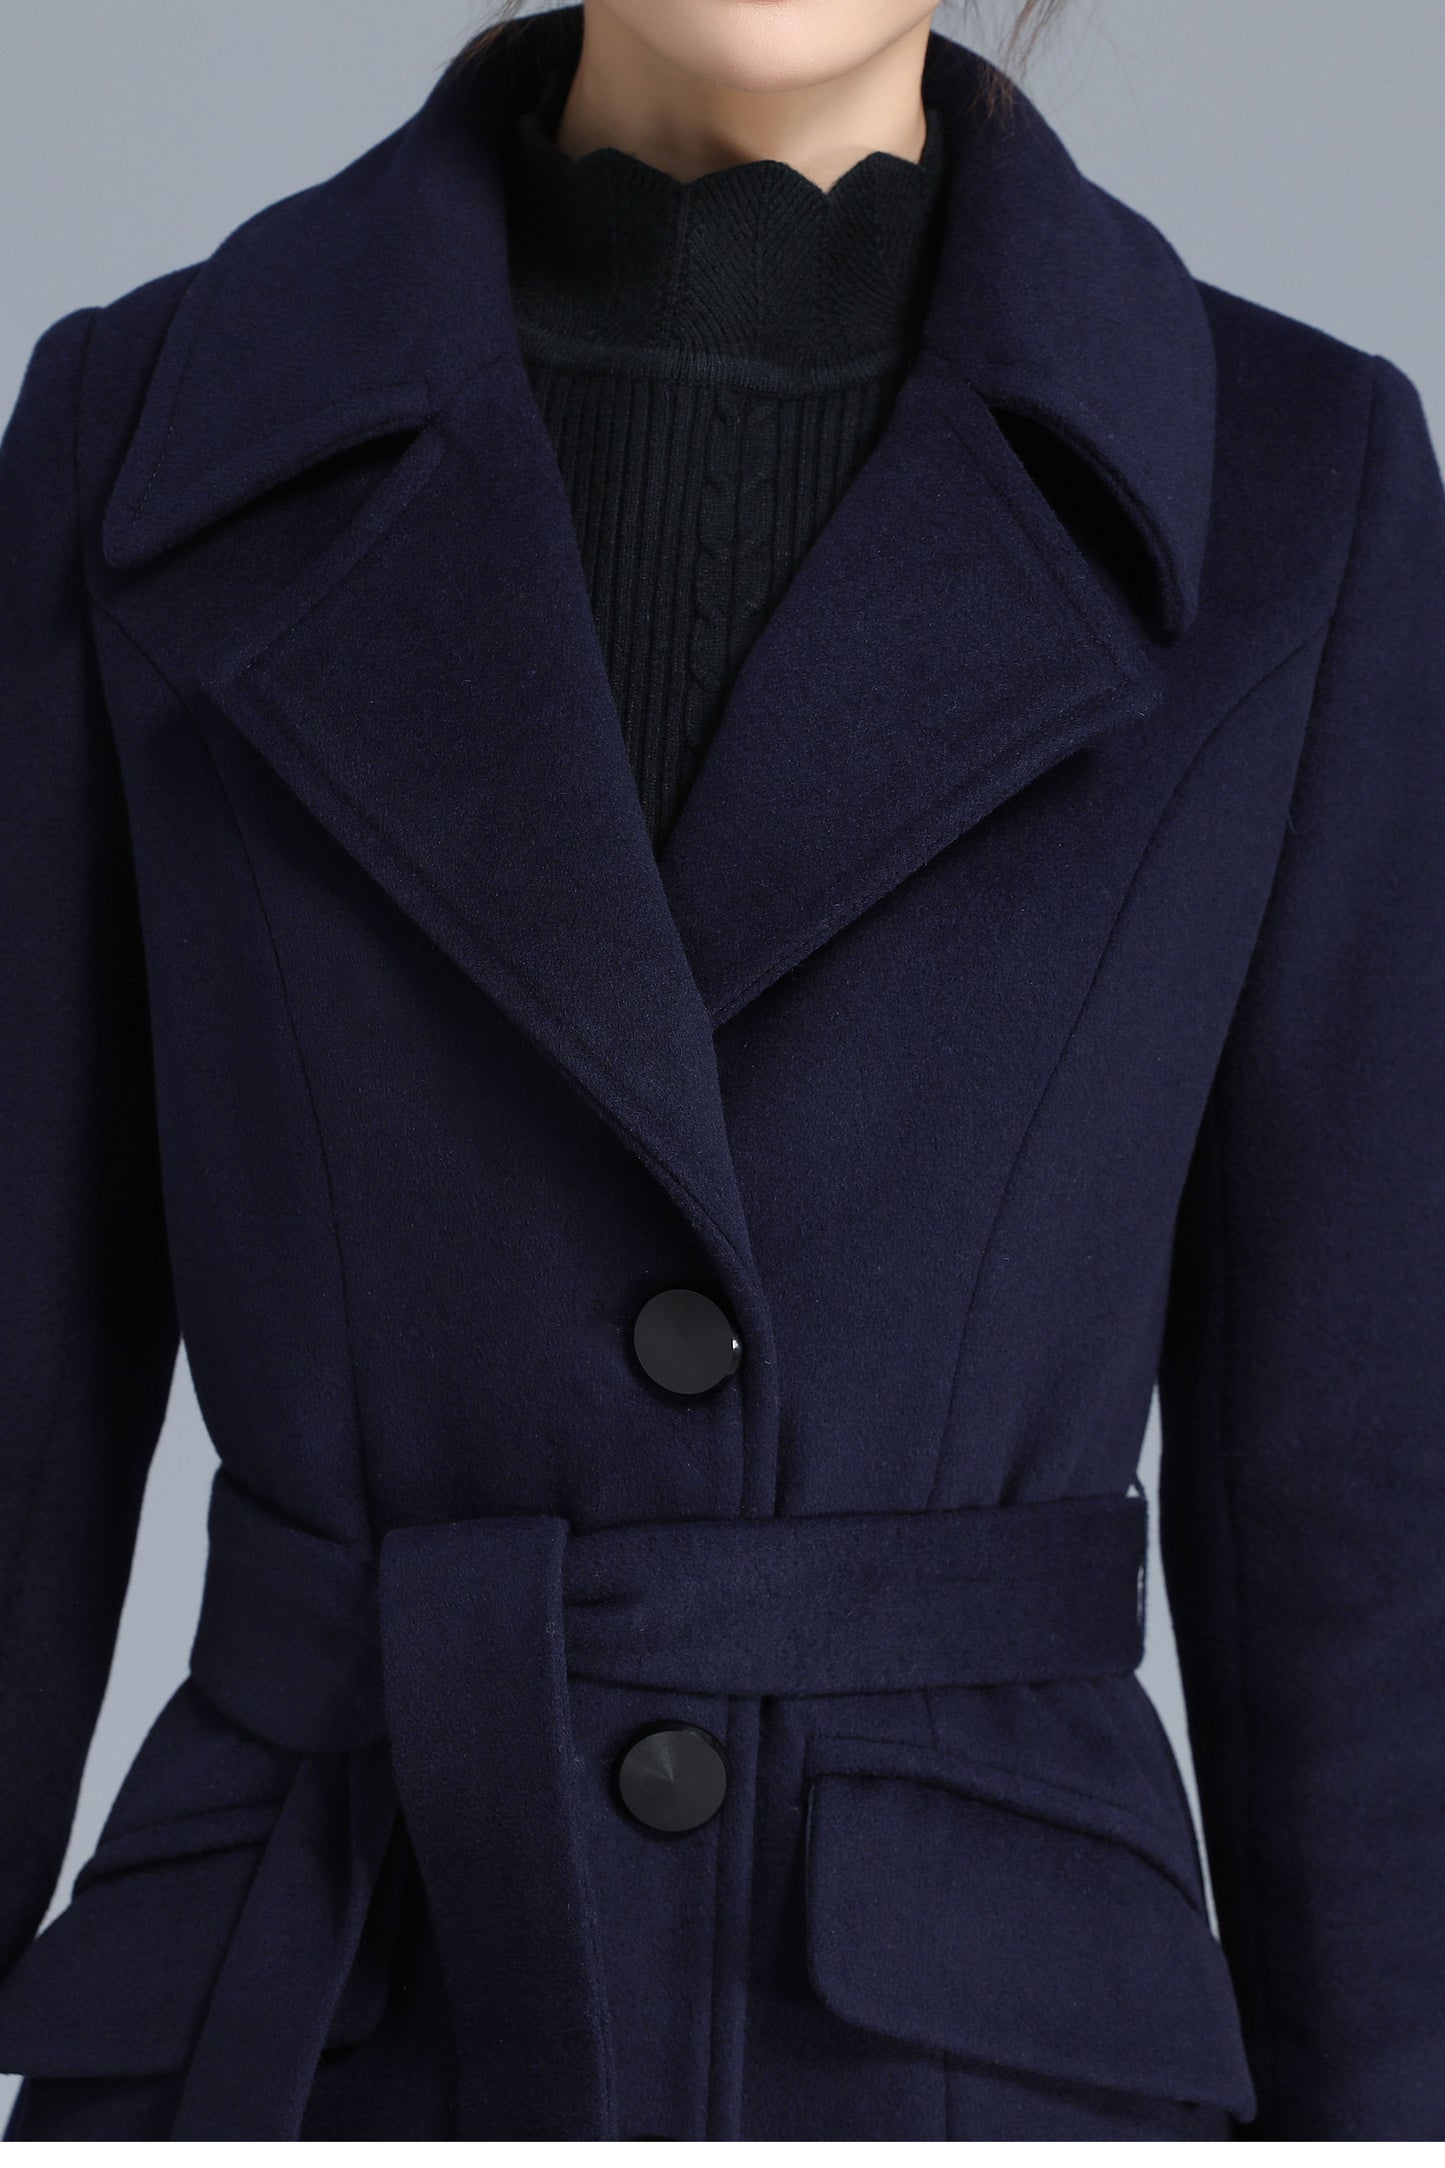 Women's Winter Single Breasted Wool Coat 3205